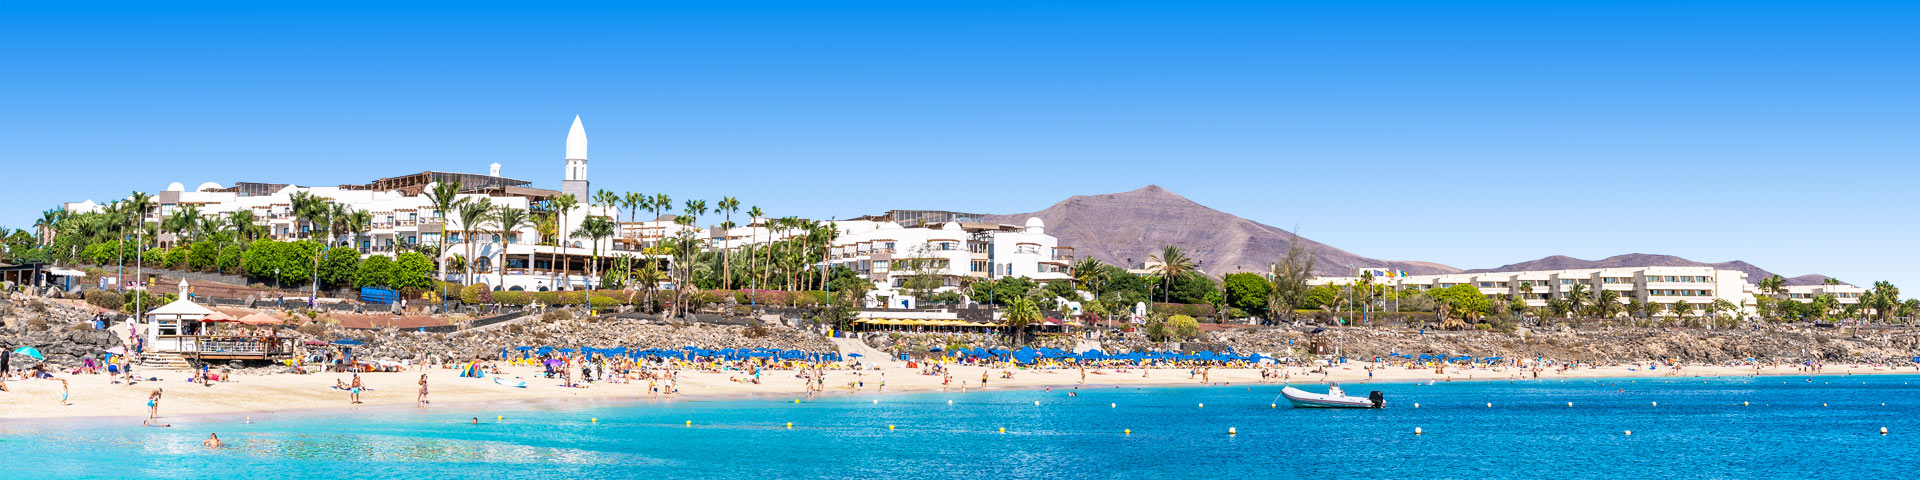 Strand met palmbomen en hotels bij Playa Blanca